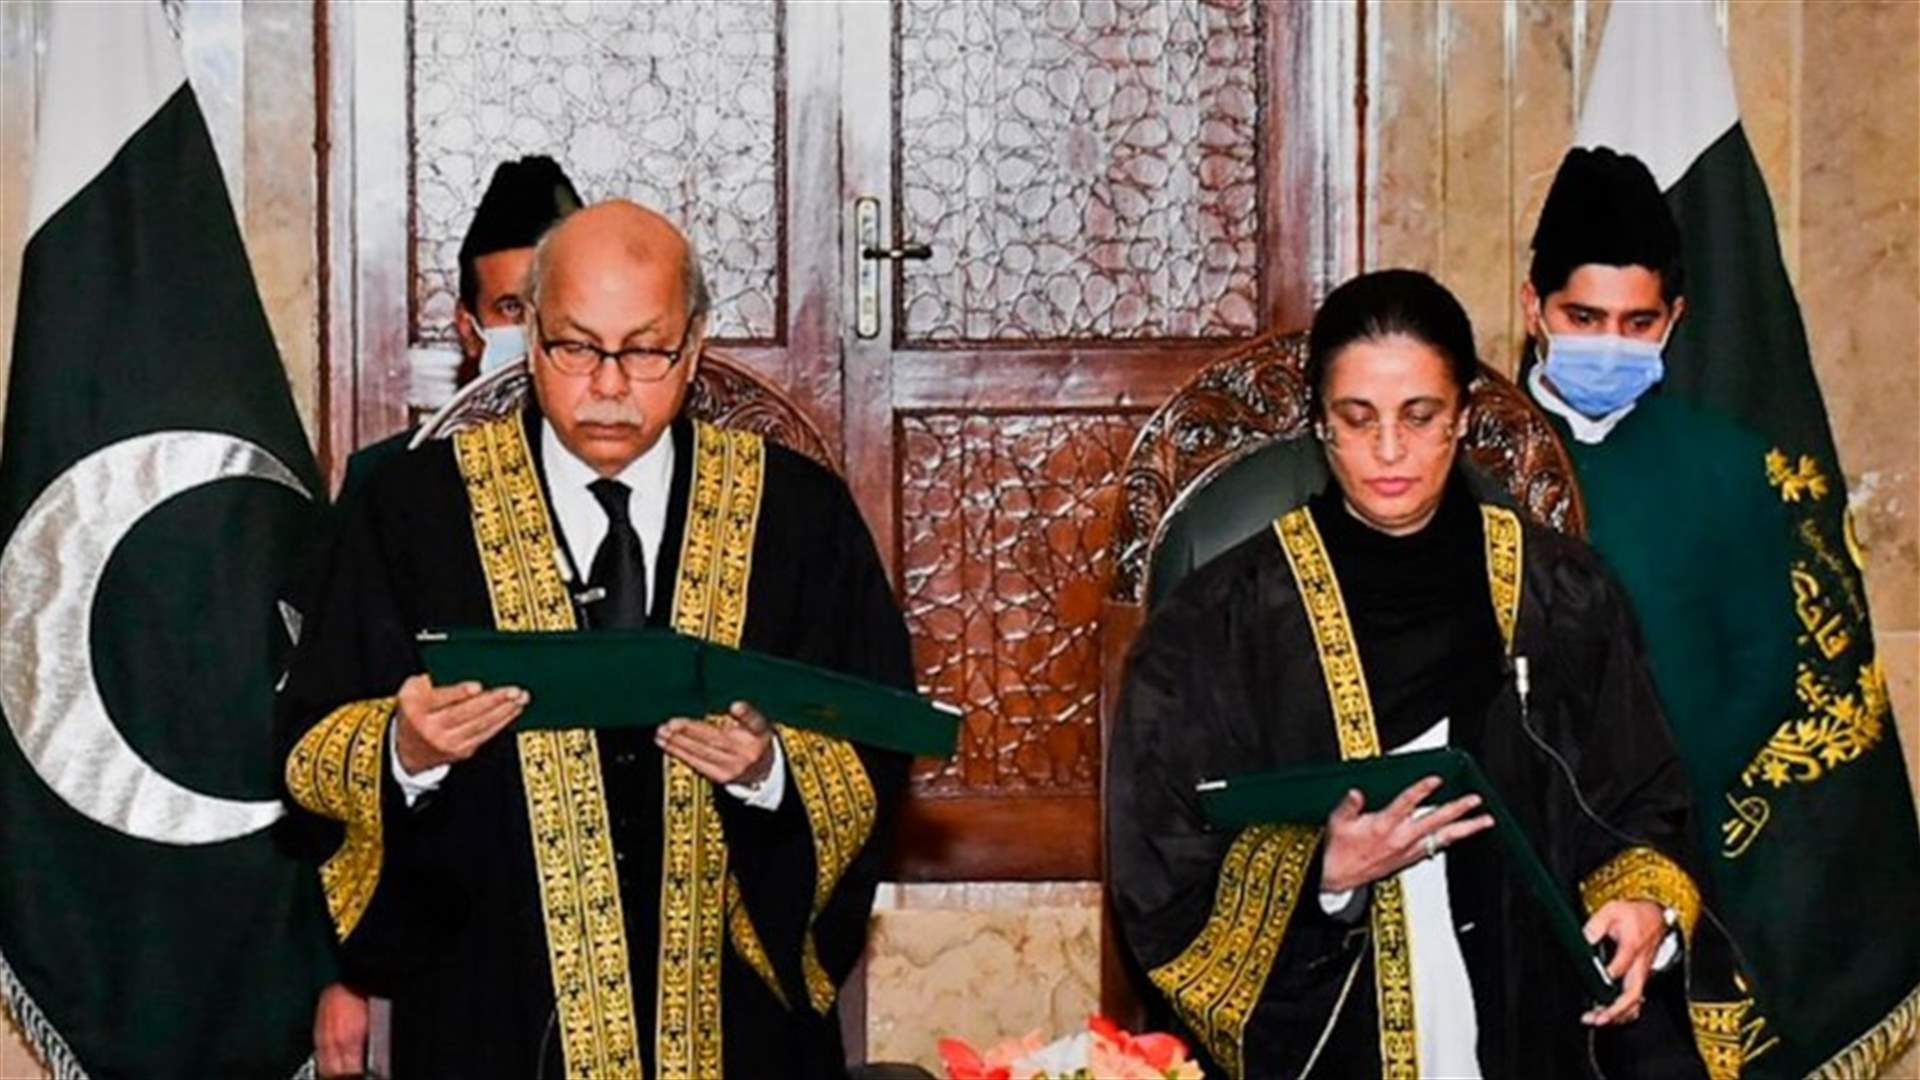 للمرة الأولى في تاريخ باكستان ... تعيين أول امرأة قاضية في المحكمة العليا